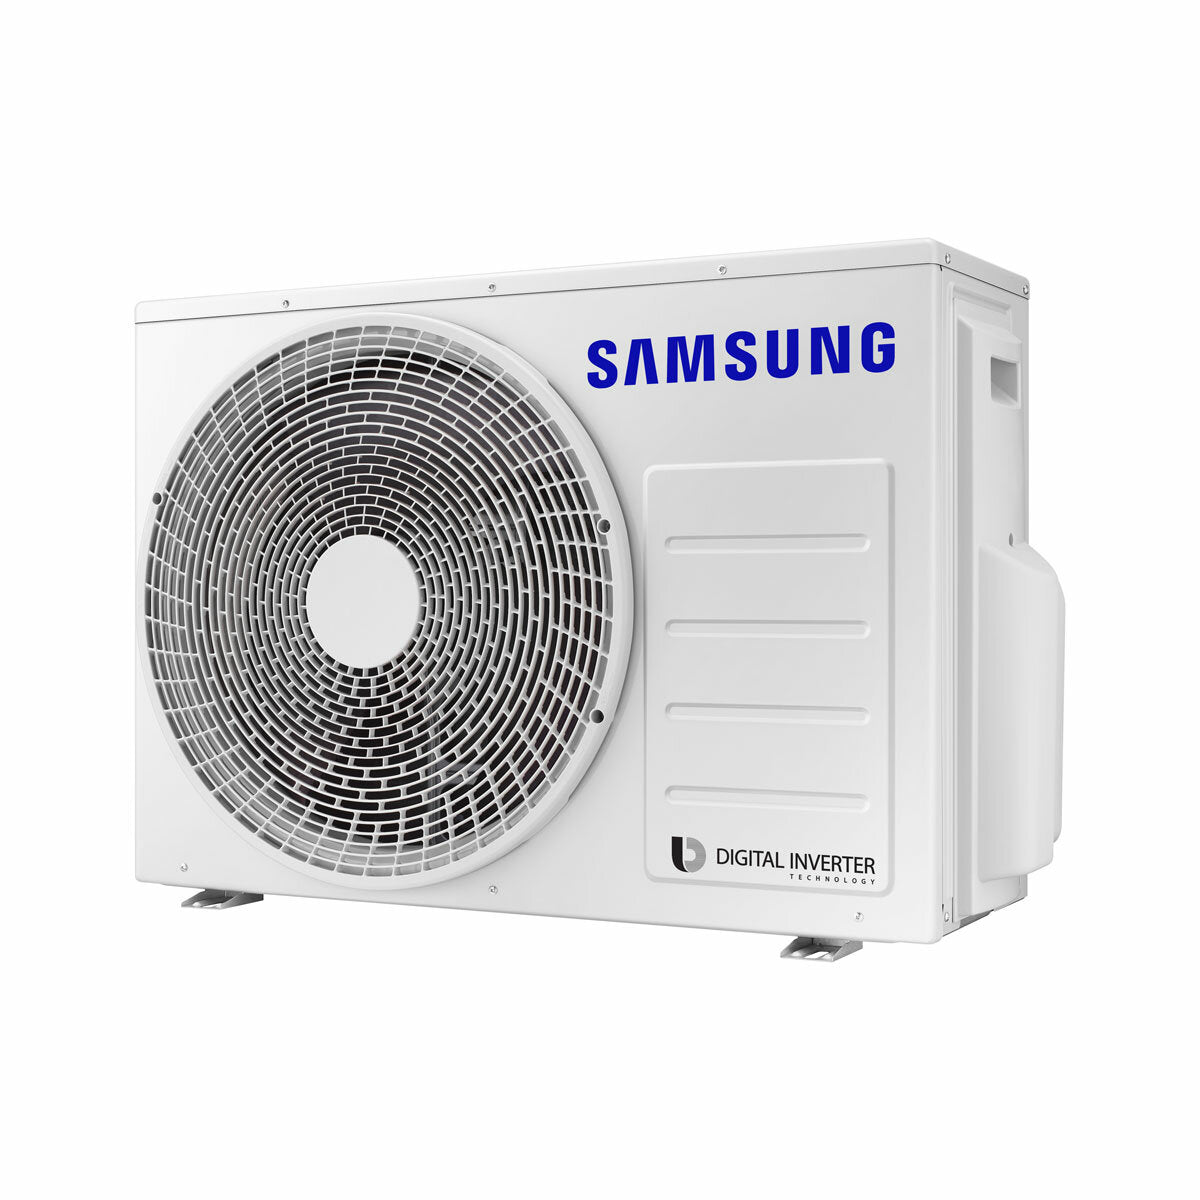 Samsung windfree Avant Klimaanlage Trial Split 7000 + 7000 + 12000 BTU Inverter A++ WLAN Außengerät 5,2 kW